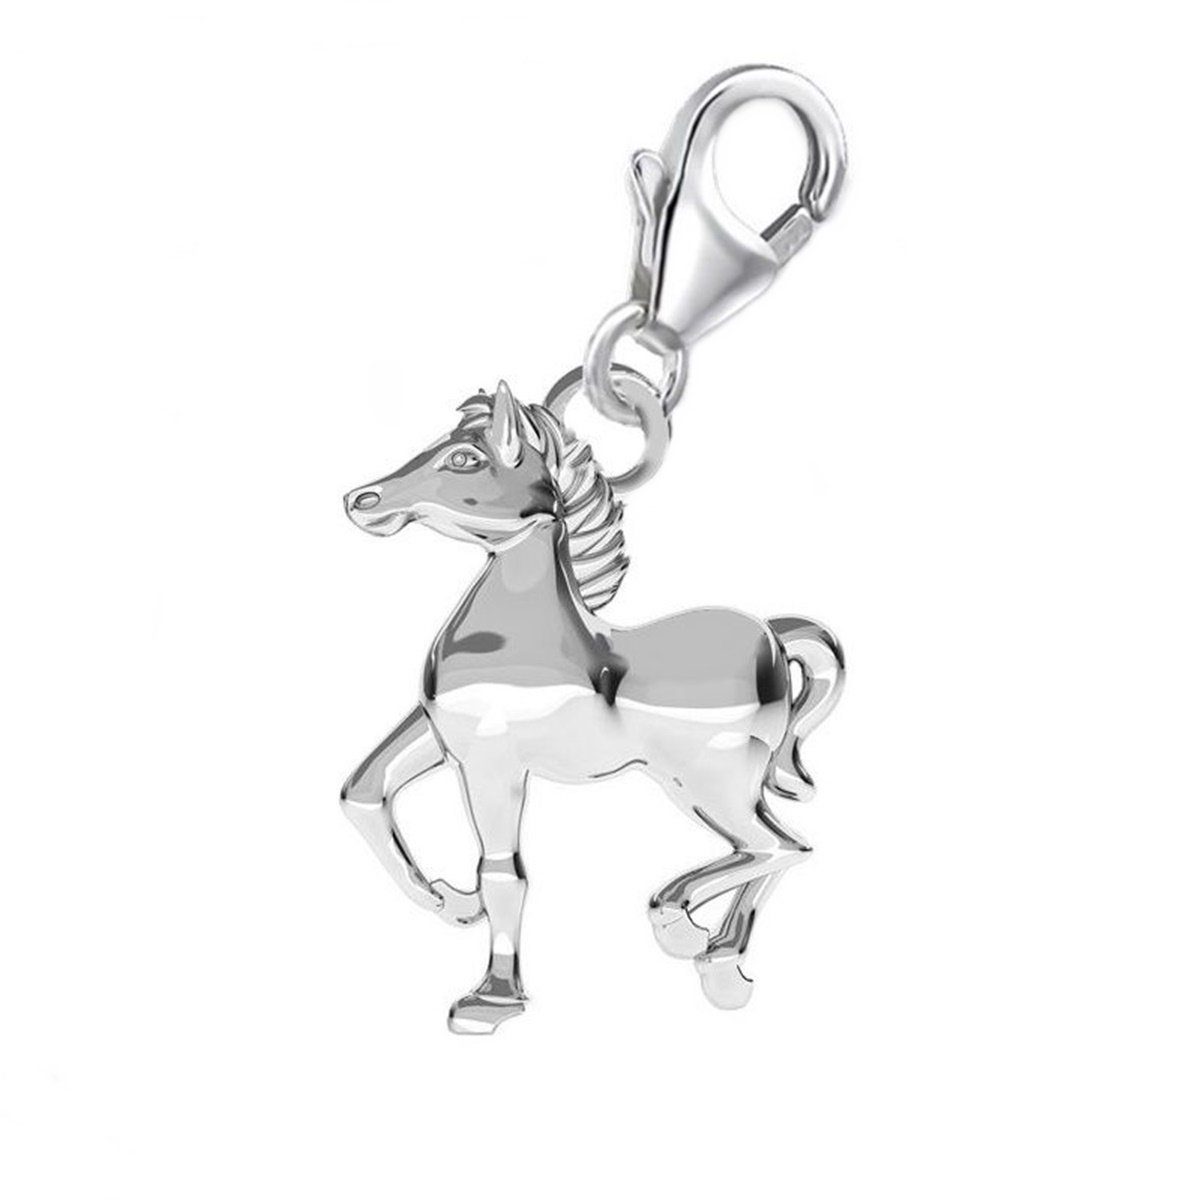 für Bettelarmband Halskette Silber 925 Charm Charm-Einhänger Etui), für Karabiner Hufeisen Pferd Gliederarmband Anhänger (inkl. Goldene oder